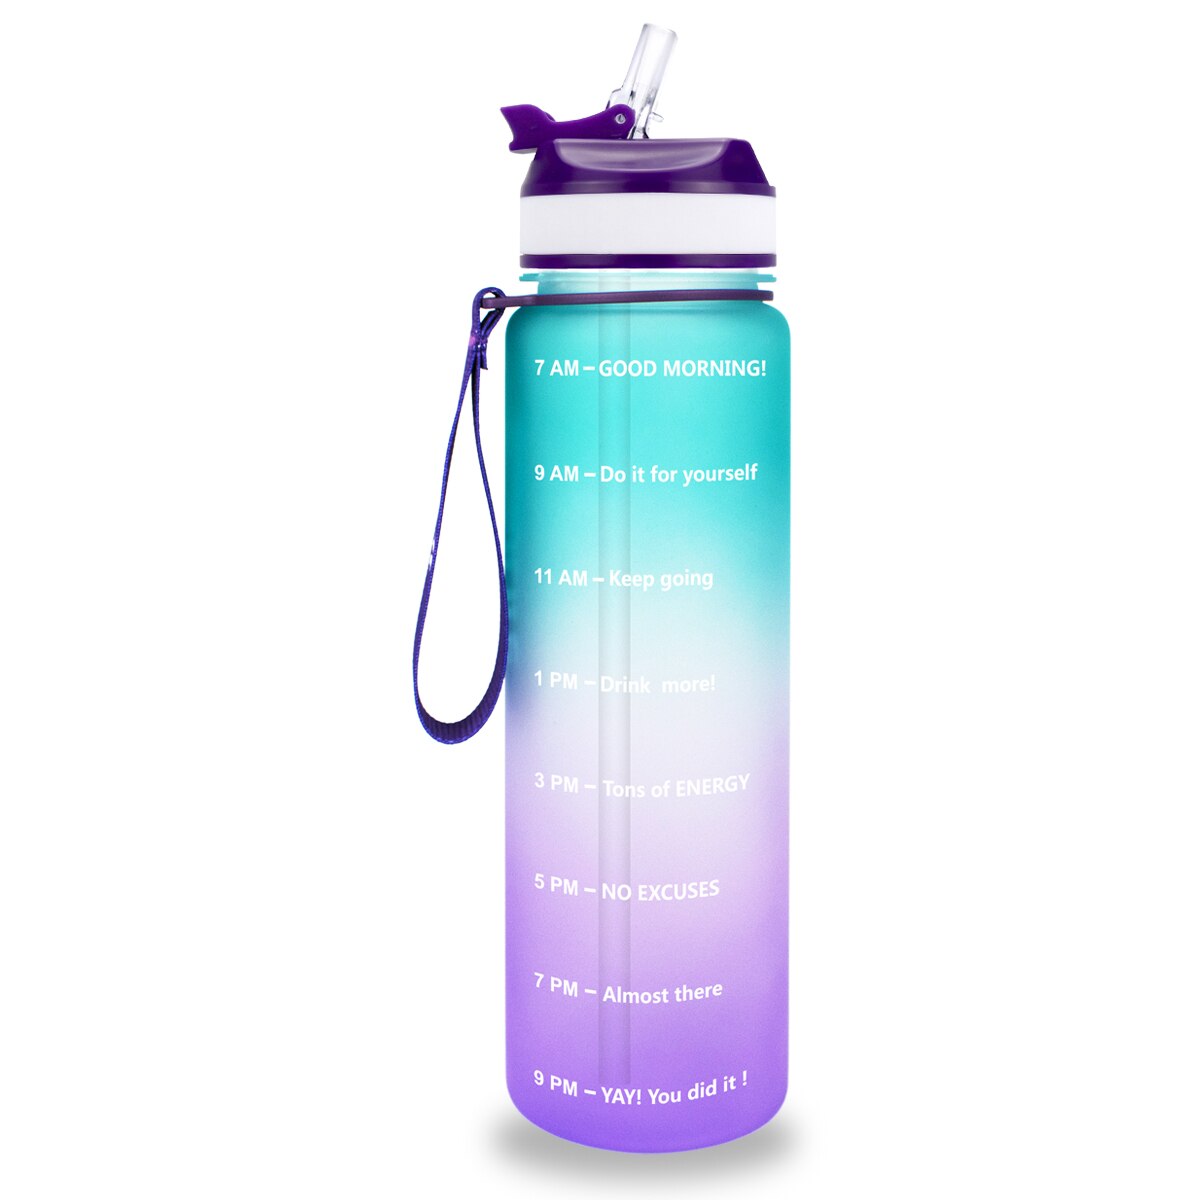 Eine gruen-violette Sporttrinkflasche mit einer Zeitmarkierungen sowie motivierenden Spruechen für verschiedene Tageszeiten. Die Flasche hat eine violette Trageschlaufe und einen Deckel mit einem aufklappbaren Trinkverschluss.